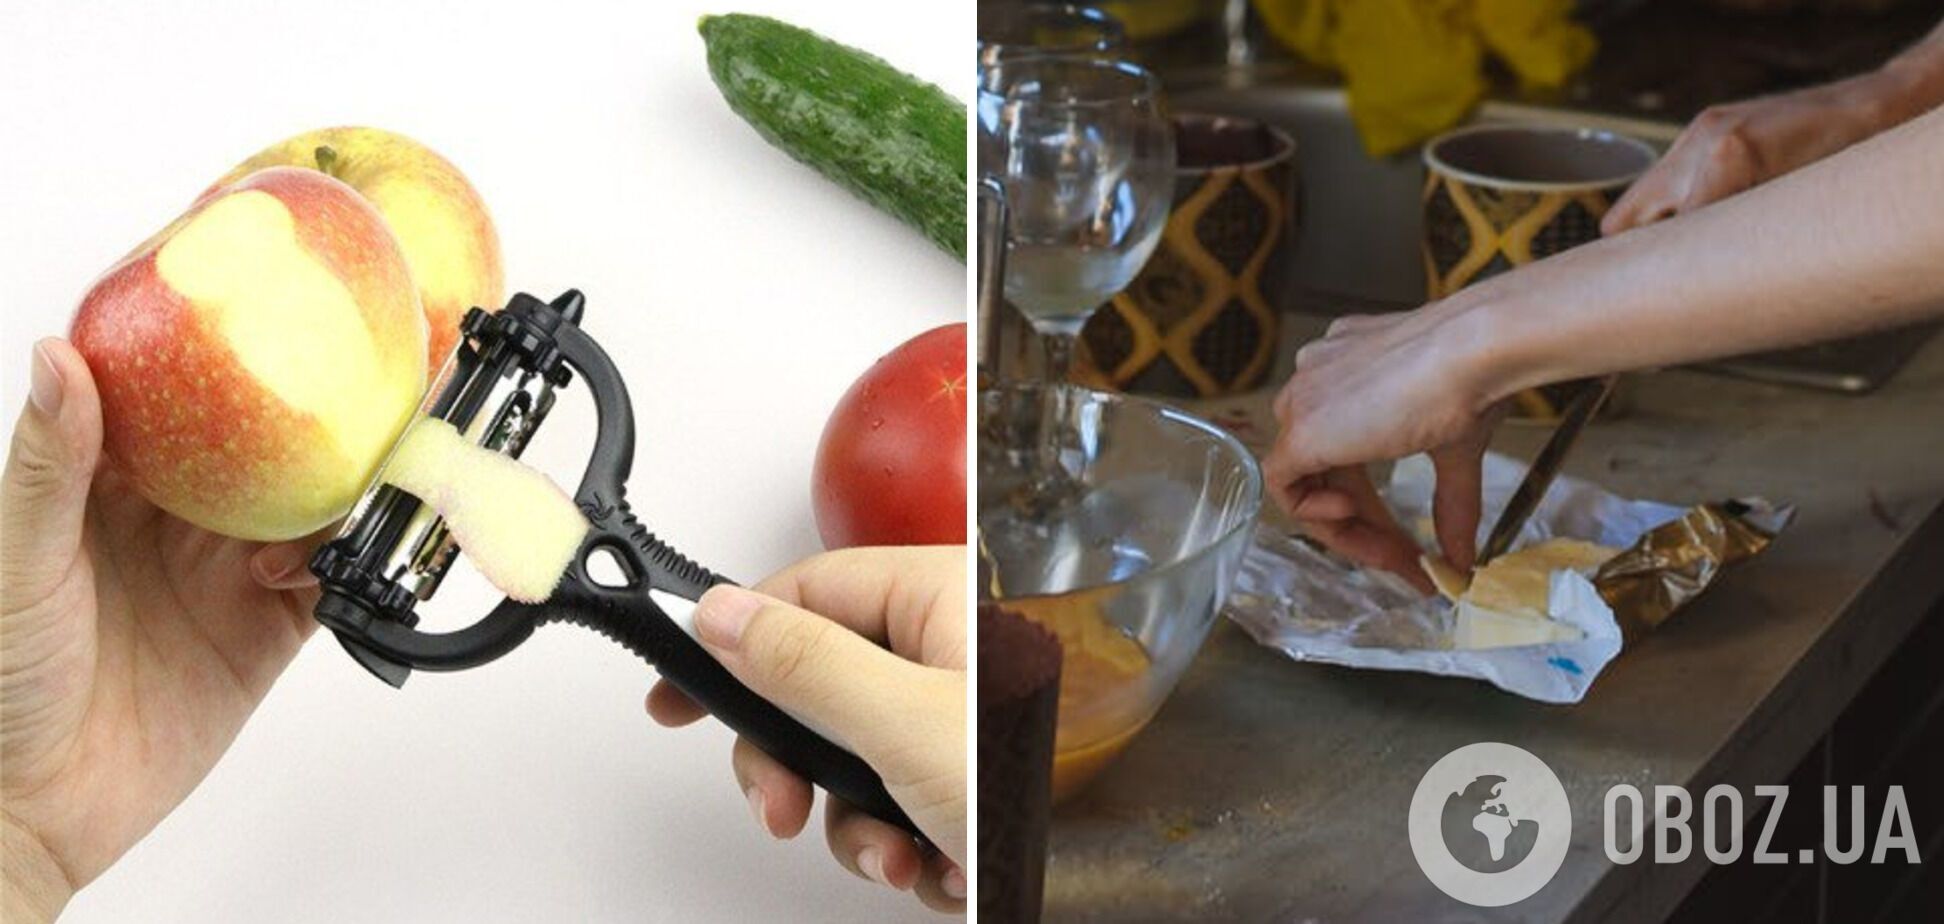 Овощная чистка, которую можно использовать вместо ножа для нарезки масла